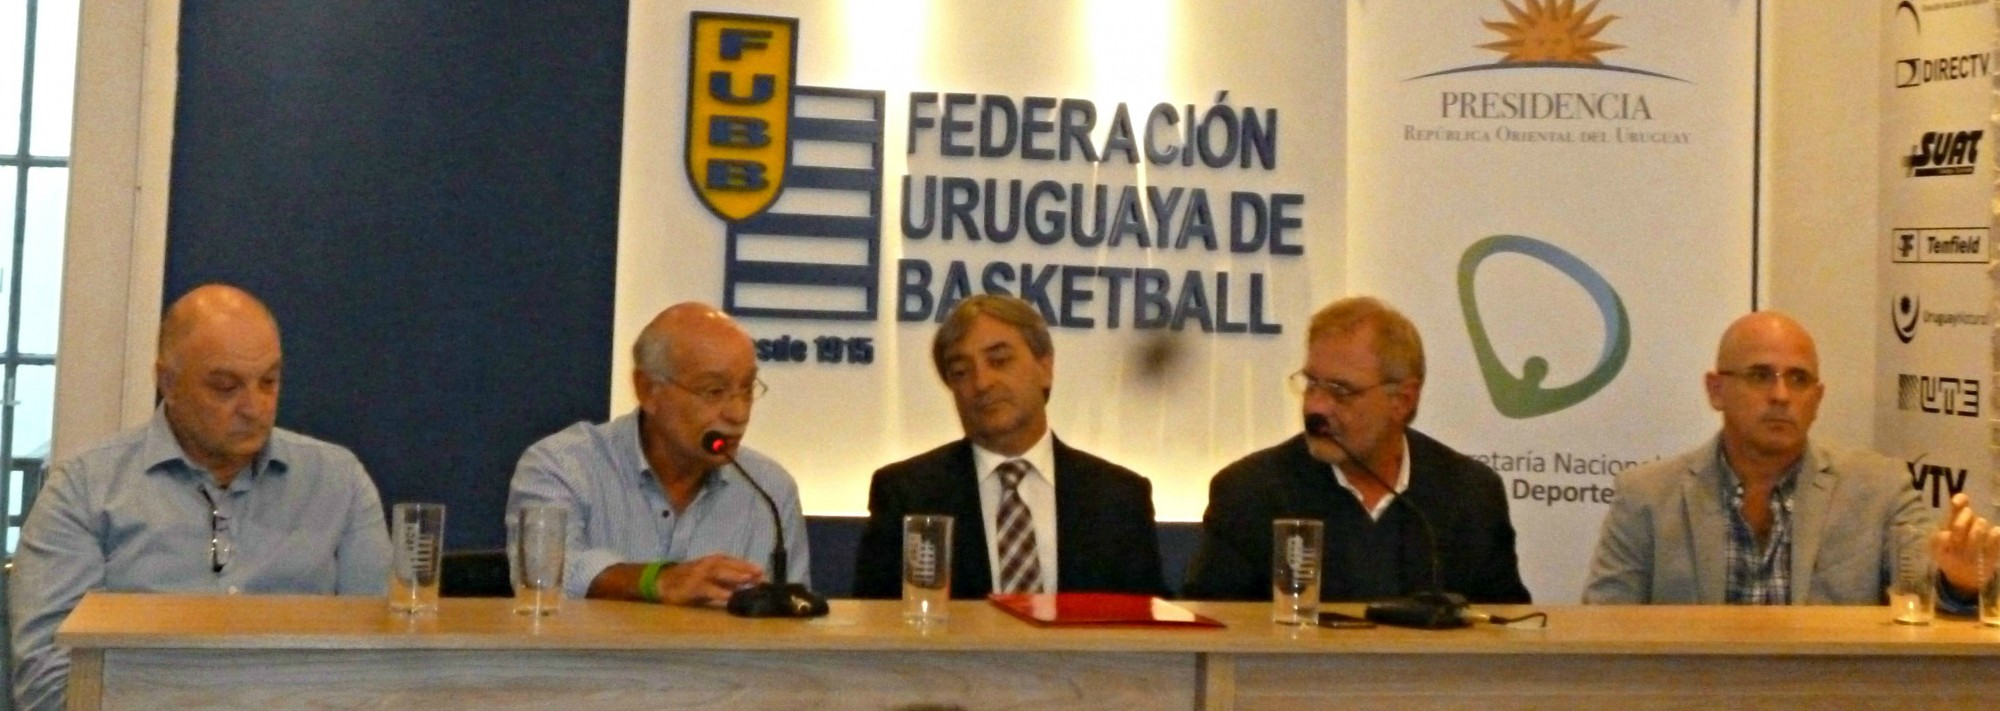 Secretaría Nacional del Deporte cedió predio de UGAB a la Federación Uruguaya de Básquetbol